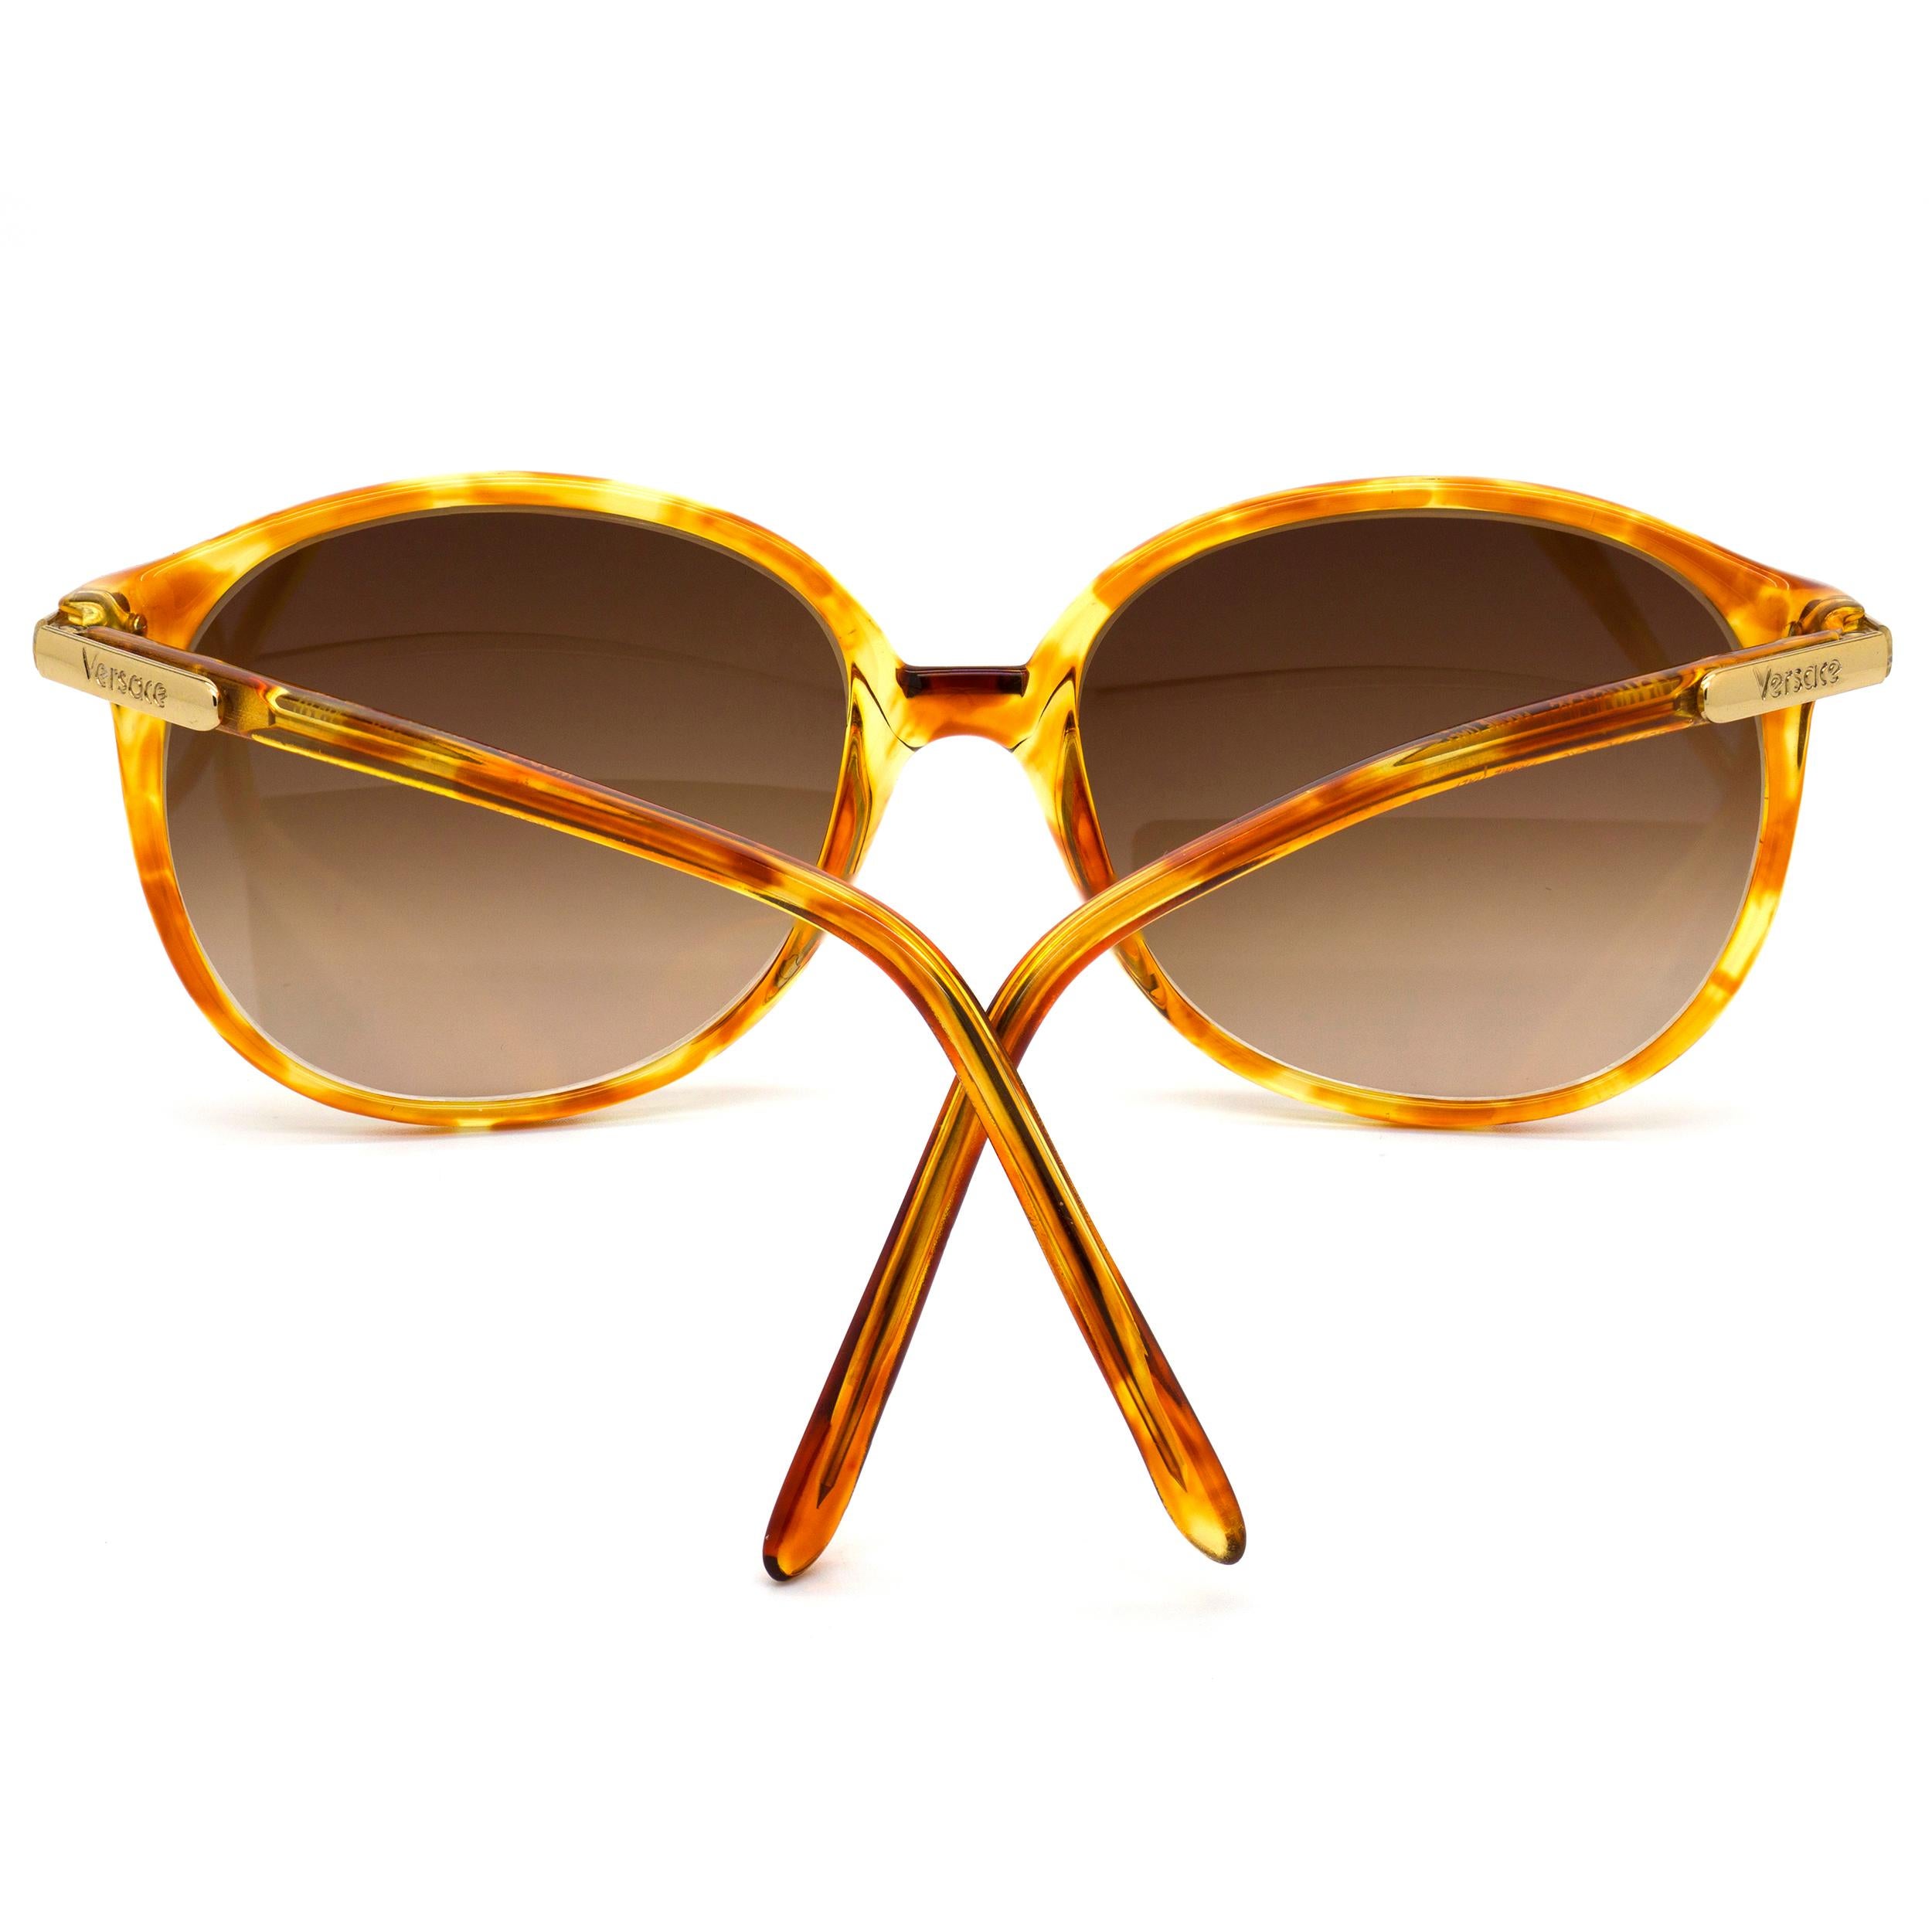 Versace vintage sunglasses 80s In New Condition For Sale In Santa Clarita, CA